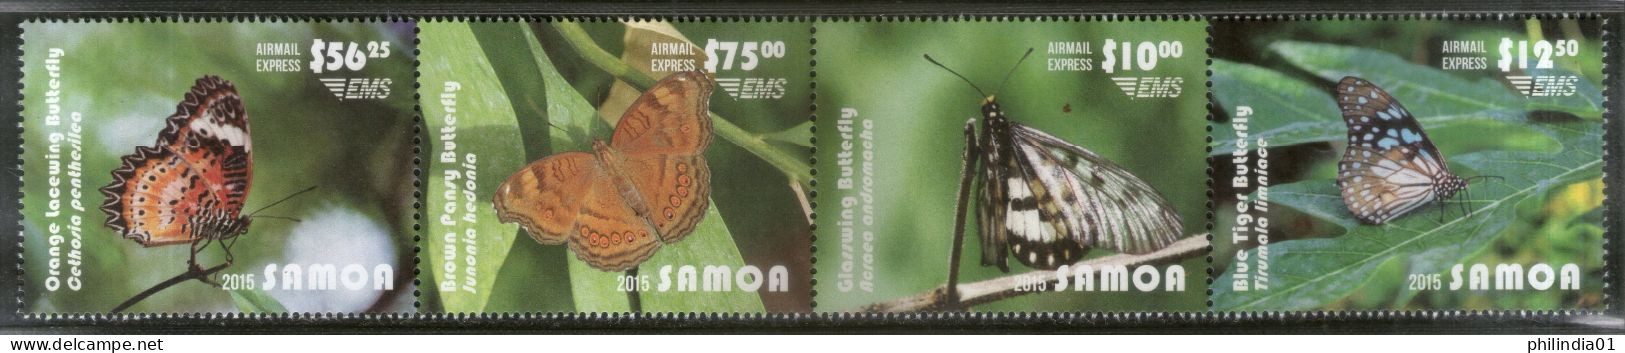 Samoa 2015 Butterflies Moth Insect Fauna Sc C15 4v CV $115 MNH # 213 - Butterflies